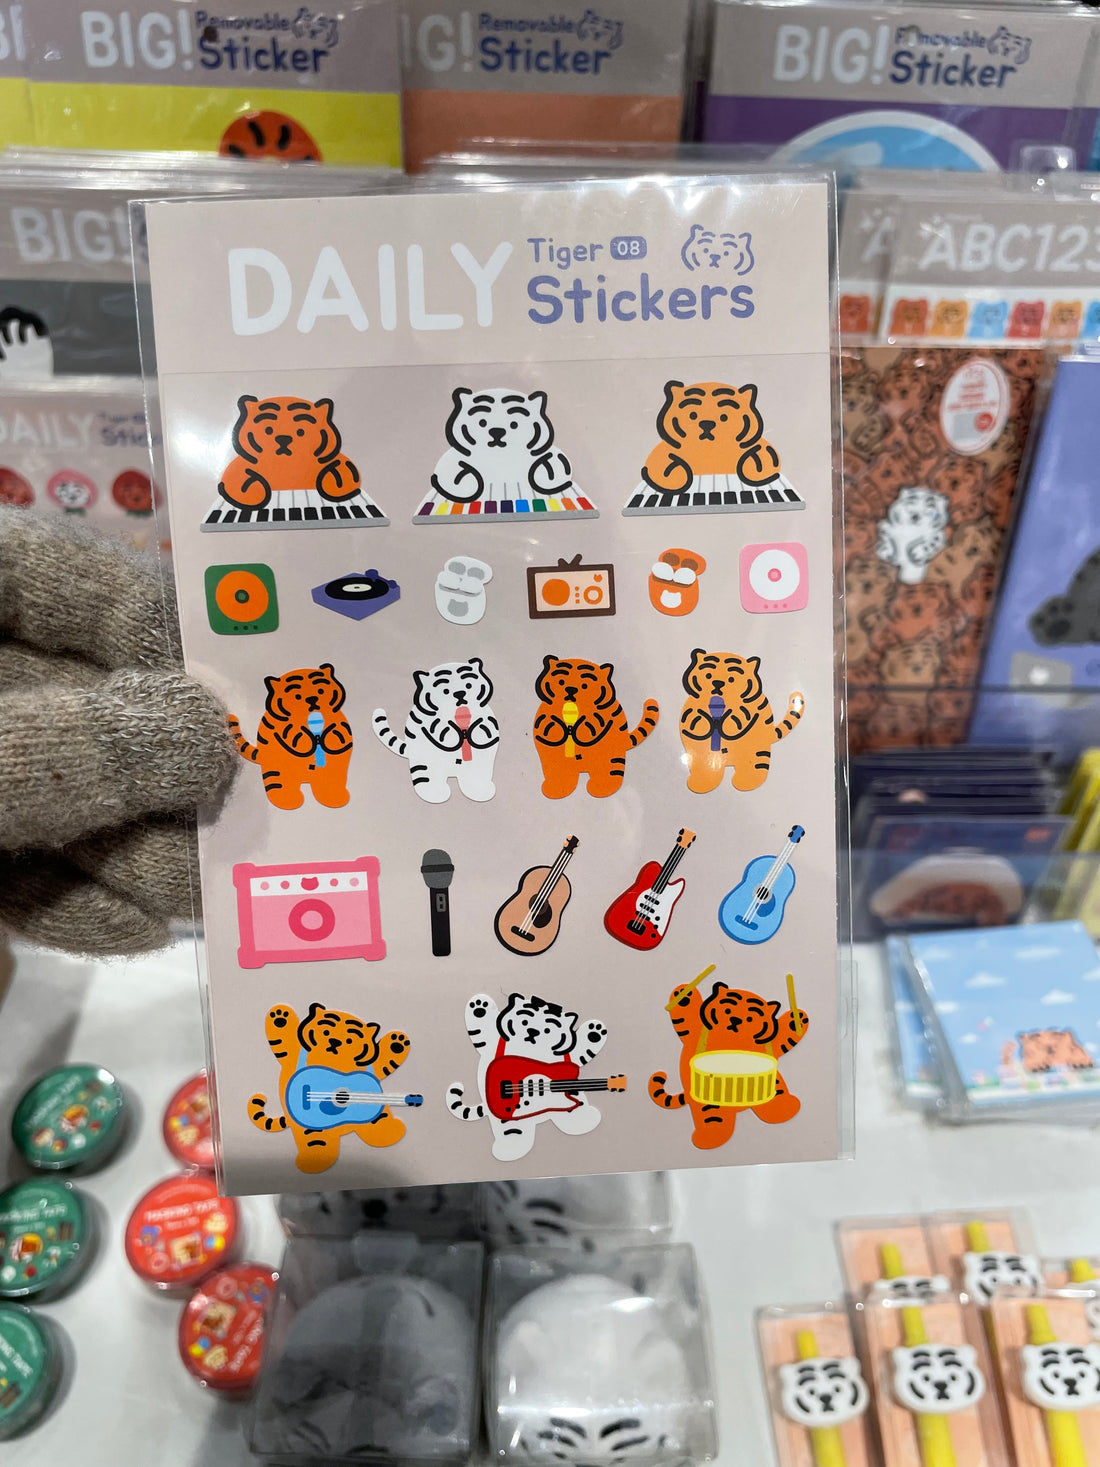 【韓國連線】Muzik Tiger Daily Tiger Stickers 06-11 日常貼紙 (1p)